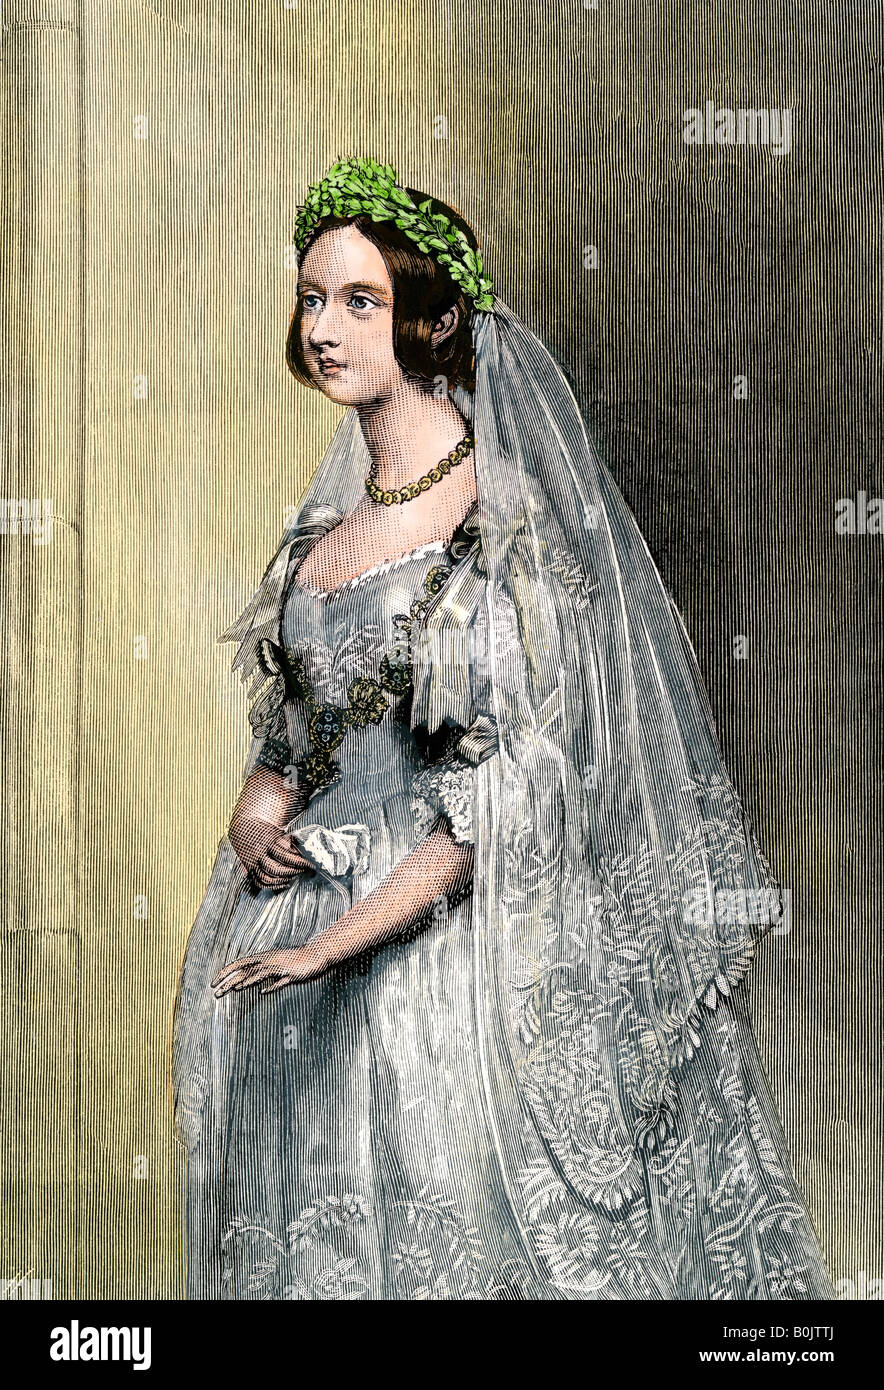 La reine Victoria le jour de son mariage. À la main, gravure sur bois Banque D'Images